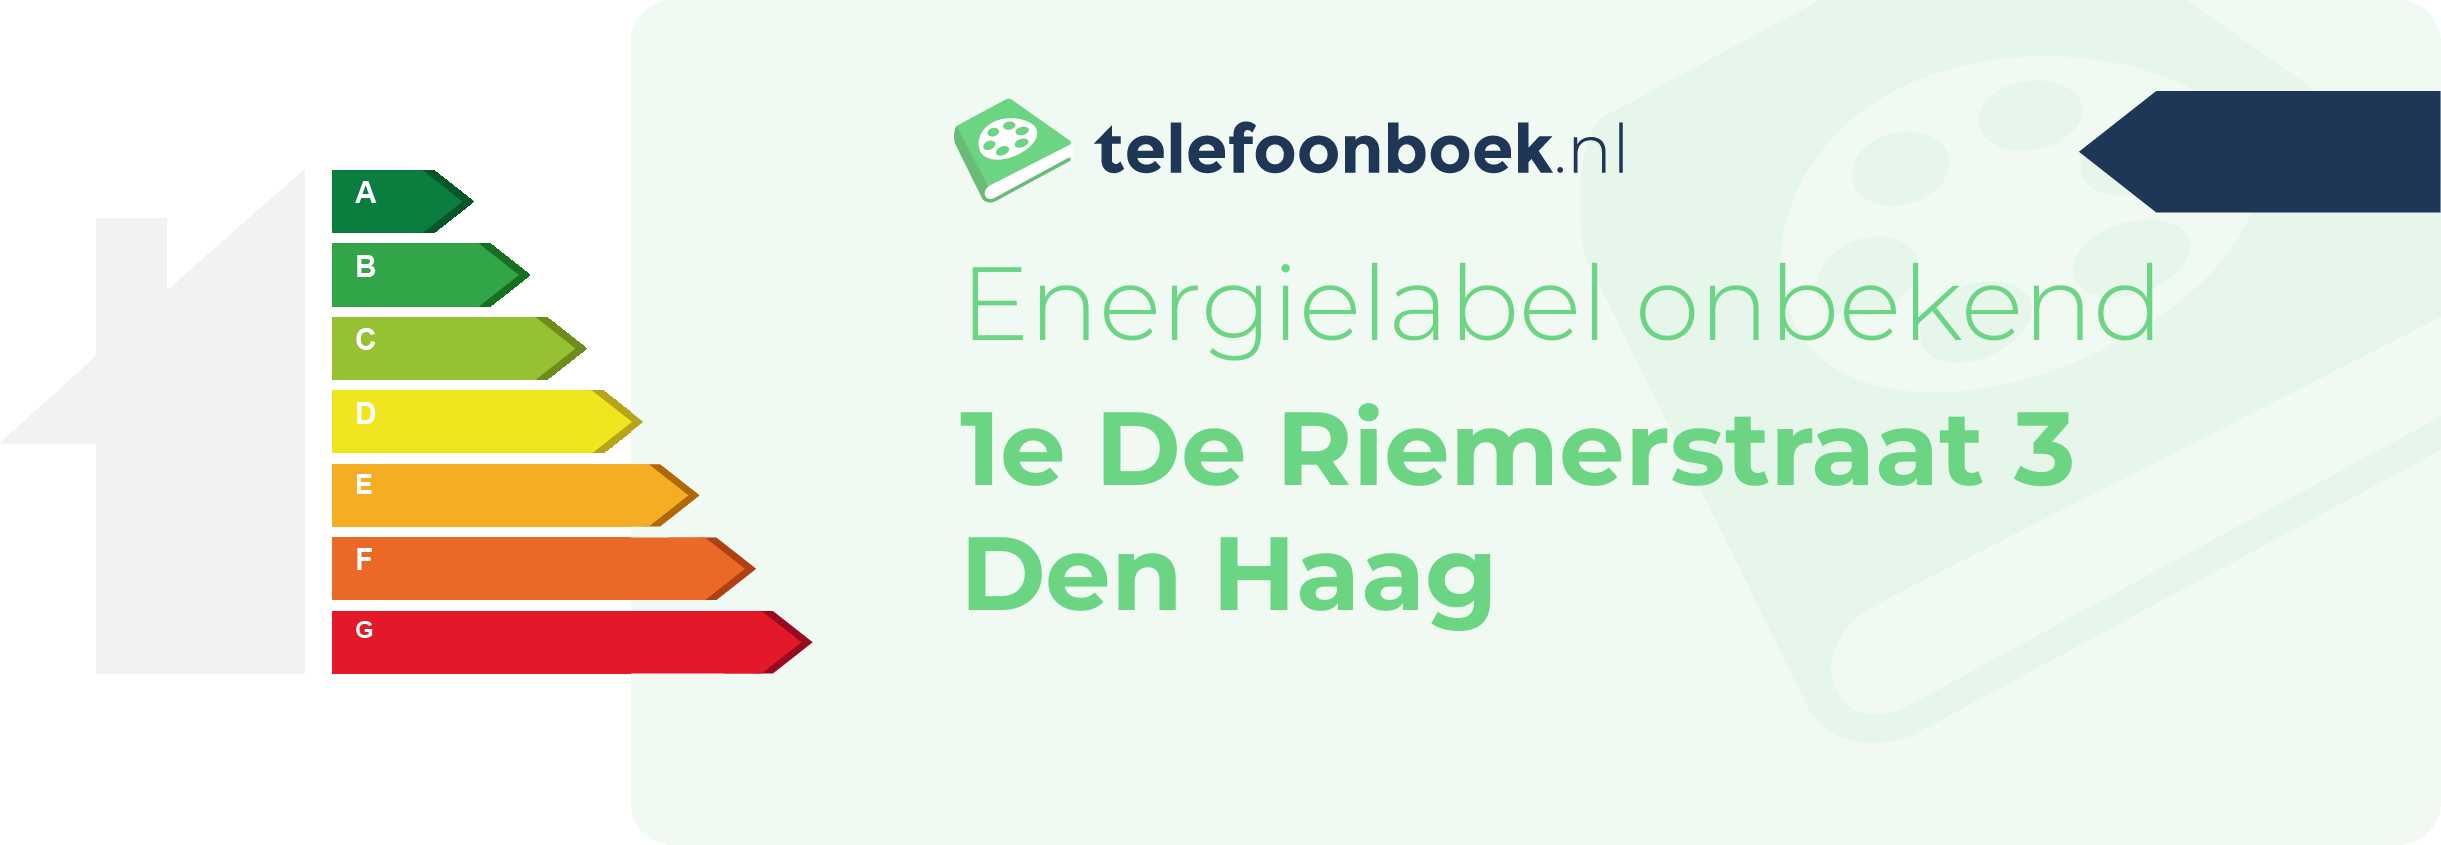 Energielabel 1e De Riemerstraat 3 Den Haag